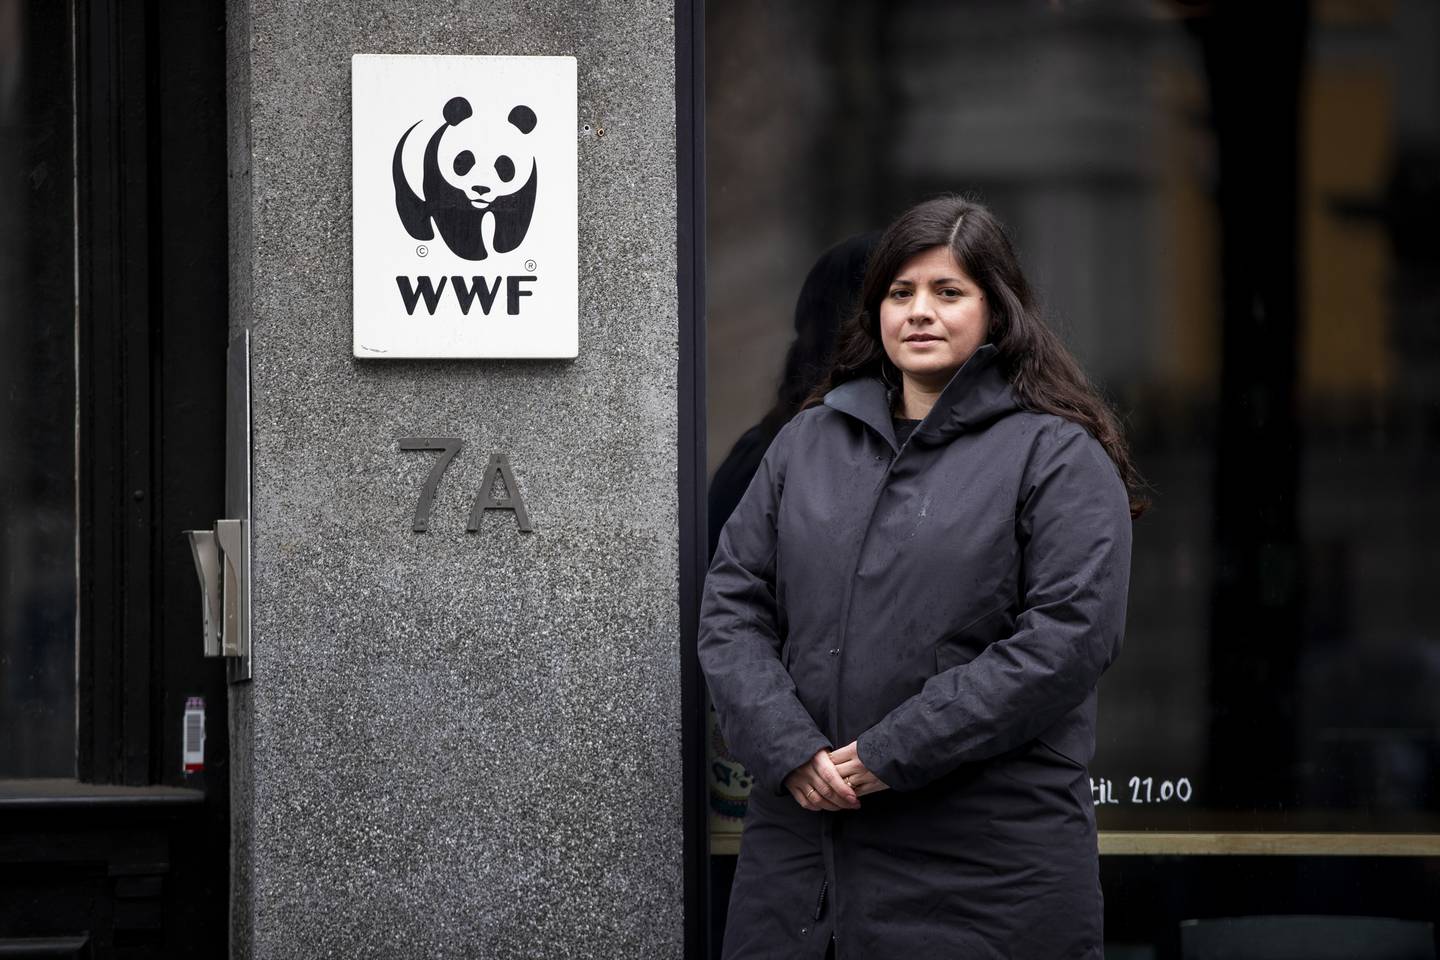 – Stadig flere ser at natur- og klimakrisen krever internasjonalt samarbeid og nye løsninger man må finne i fellesskap. Denne høsten blir en test på evnen til å bli enige om slike løsninger på globalt nivå, sier Karoline Andaur, generalsekretær i WWF Verdens naturfond.